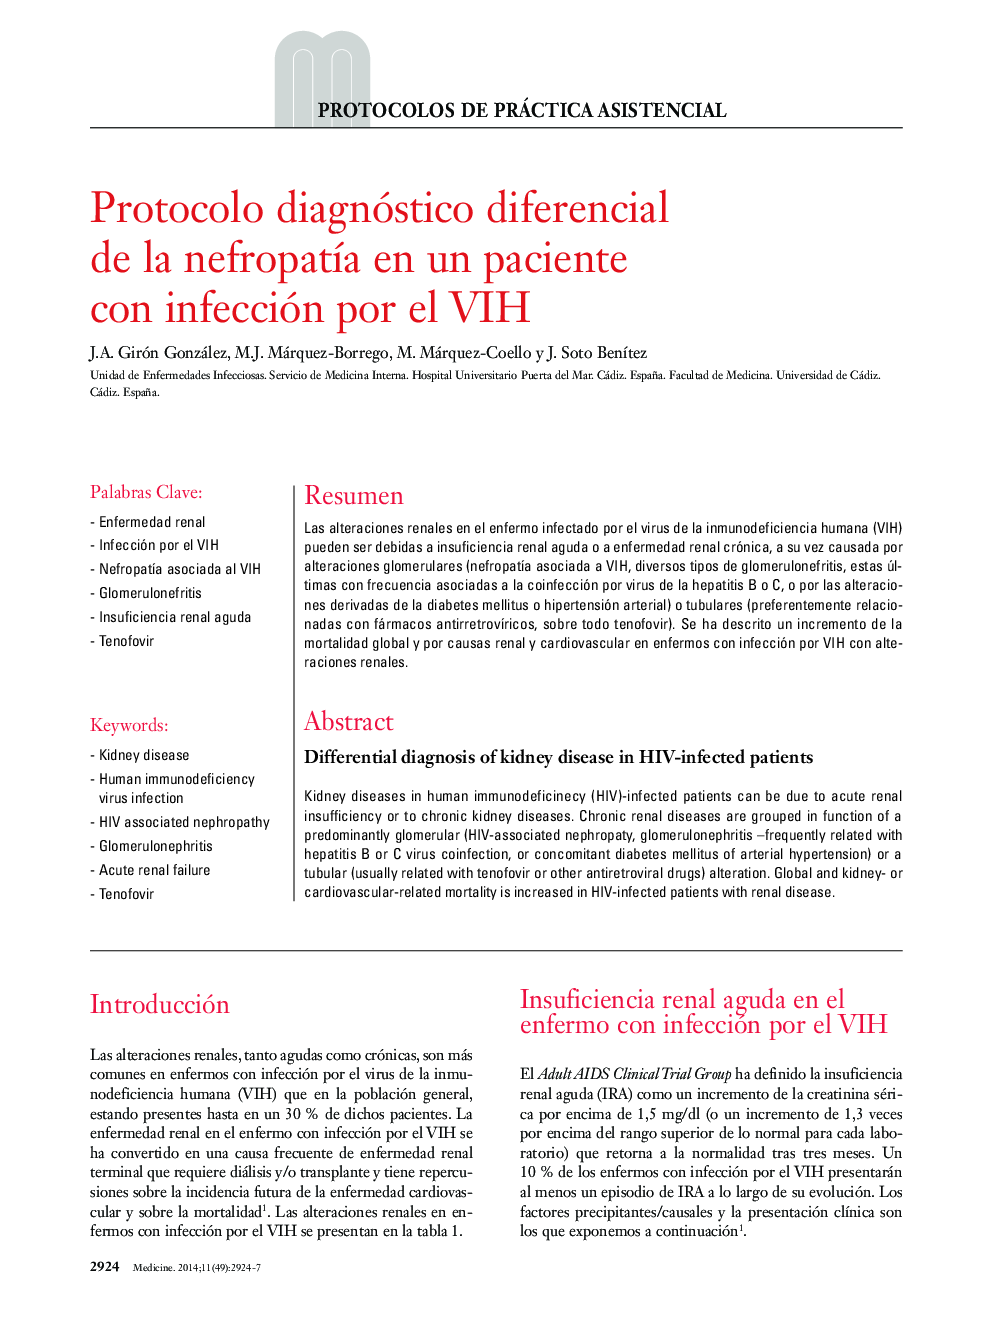 Protocolo diagnóstico diferencial de la nefropatía en un paciente con infección por el VIH